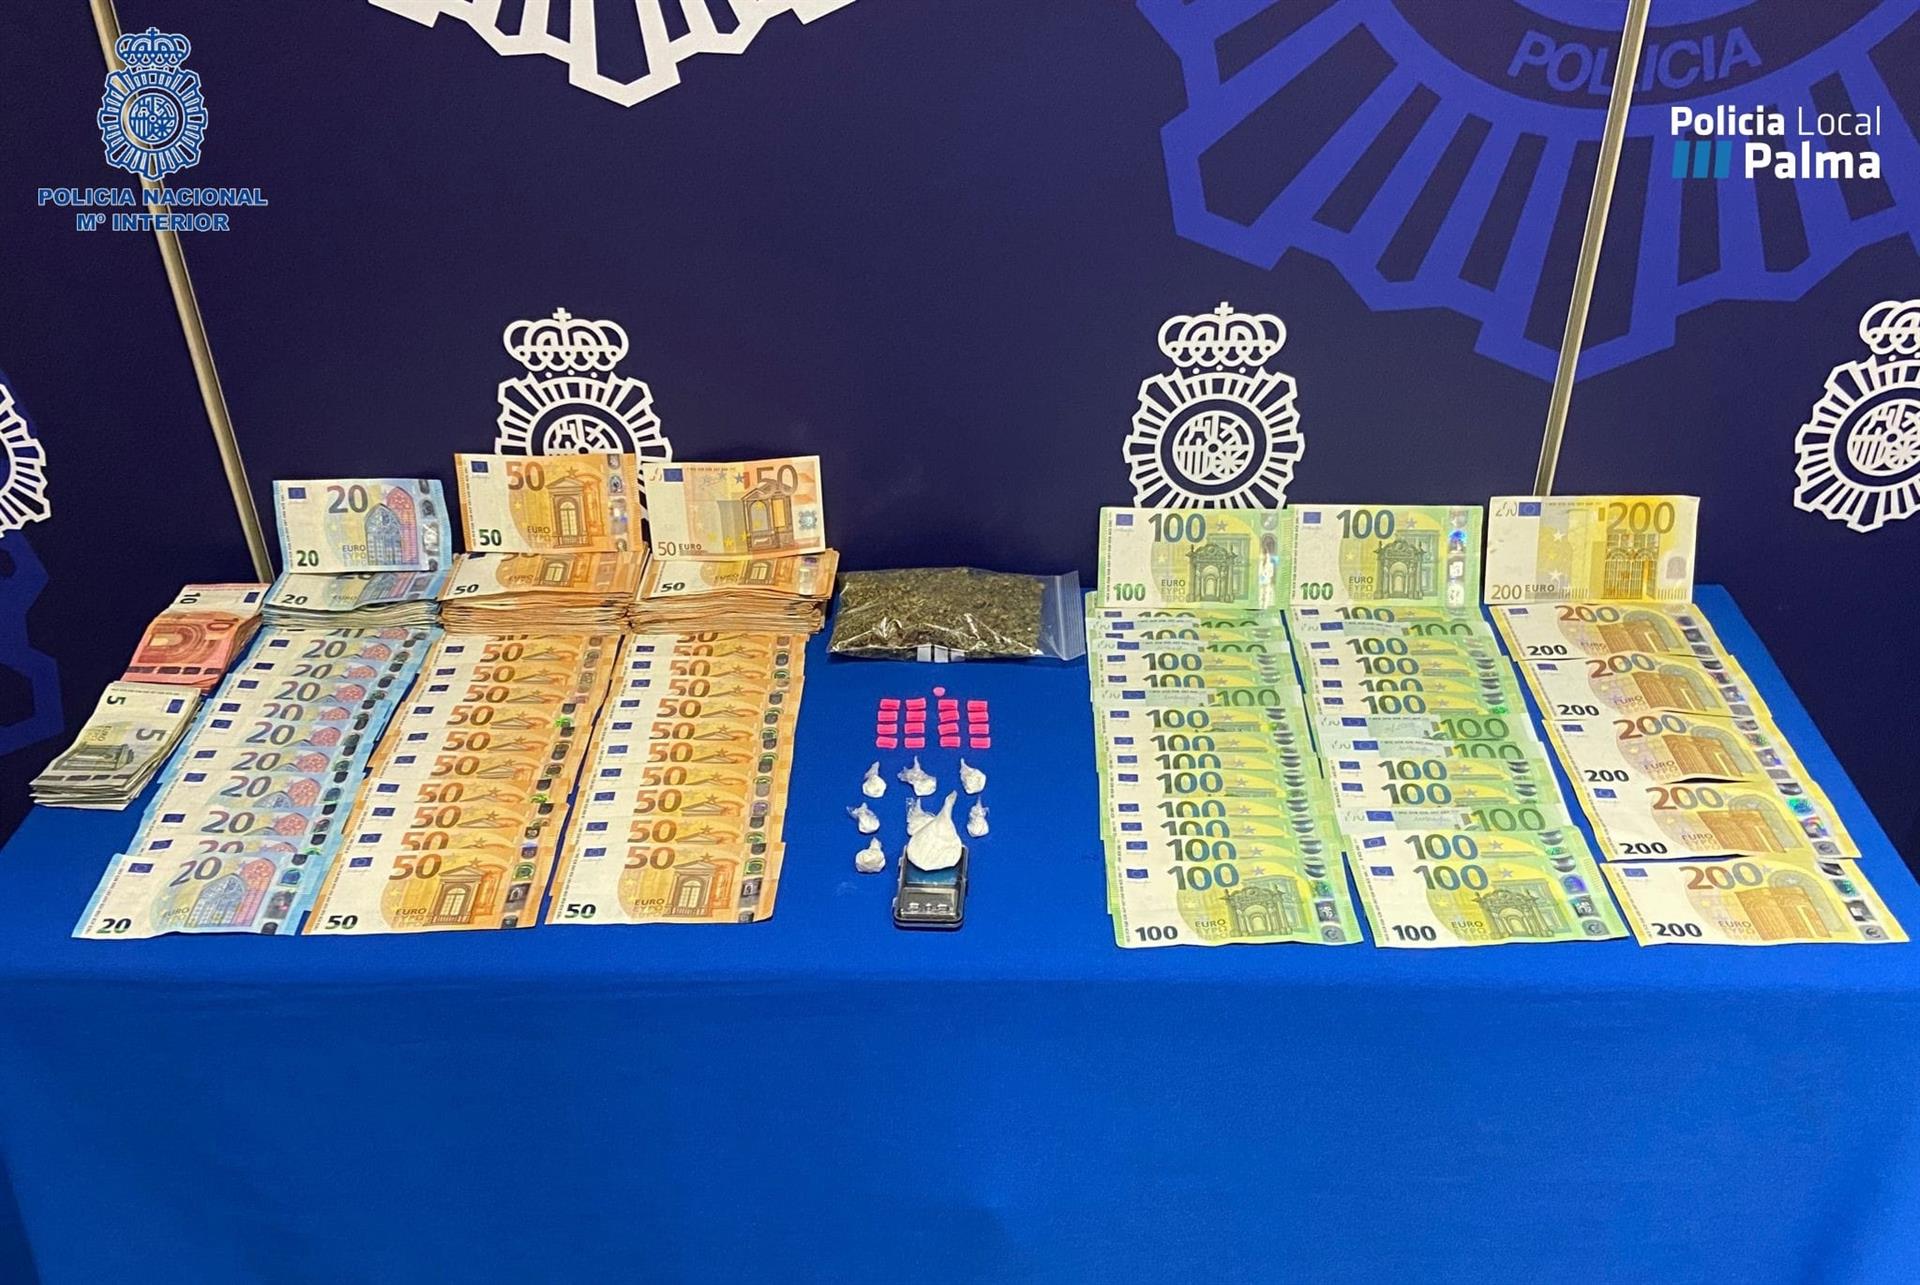 Sustancias estupefacientes y más de 19.000 euros intervenidos en una operación antidroga de la Policía Nacional, en colaboración con la Policía Local de Palma - POLICÍA NACIONAL